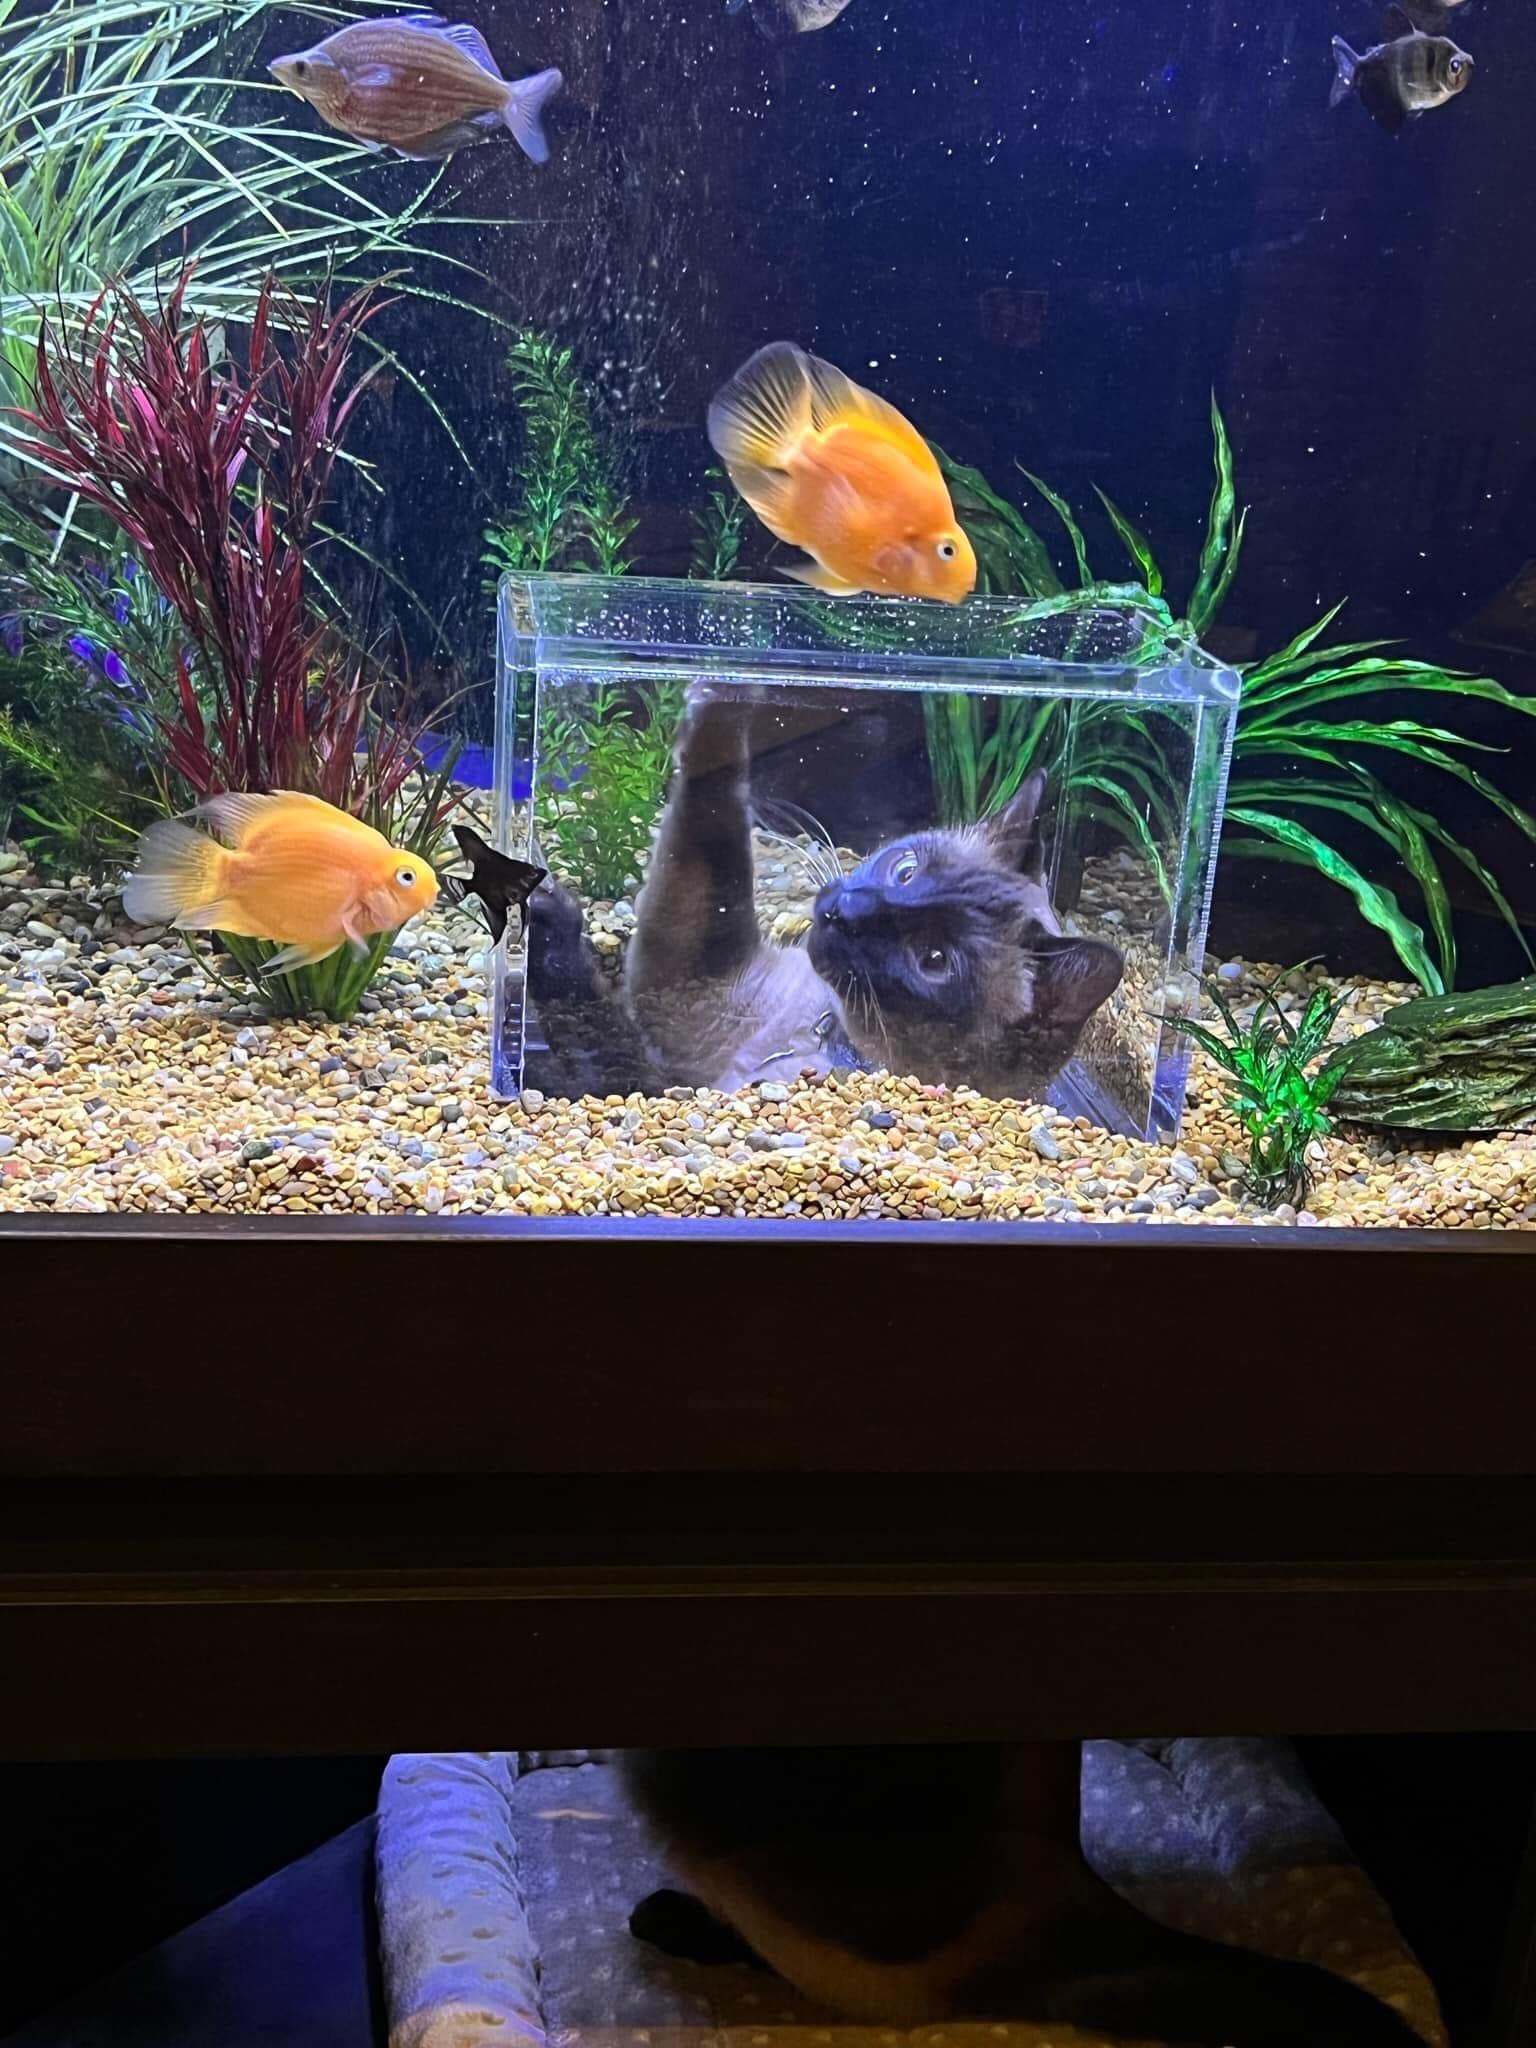 Woman has amazing idea for her aquarium